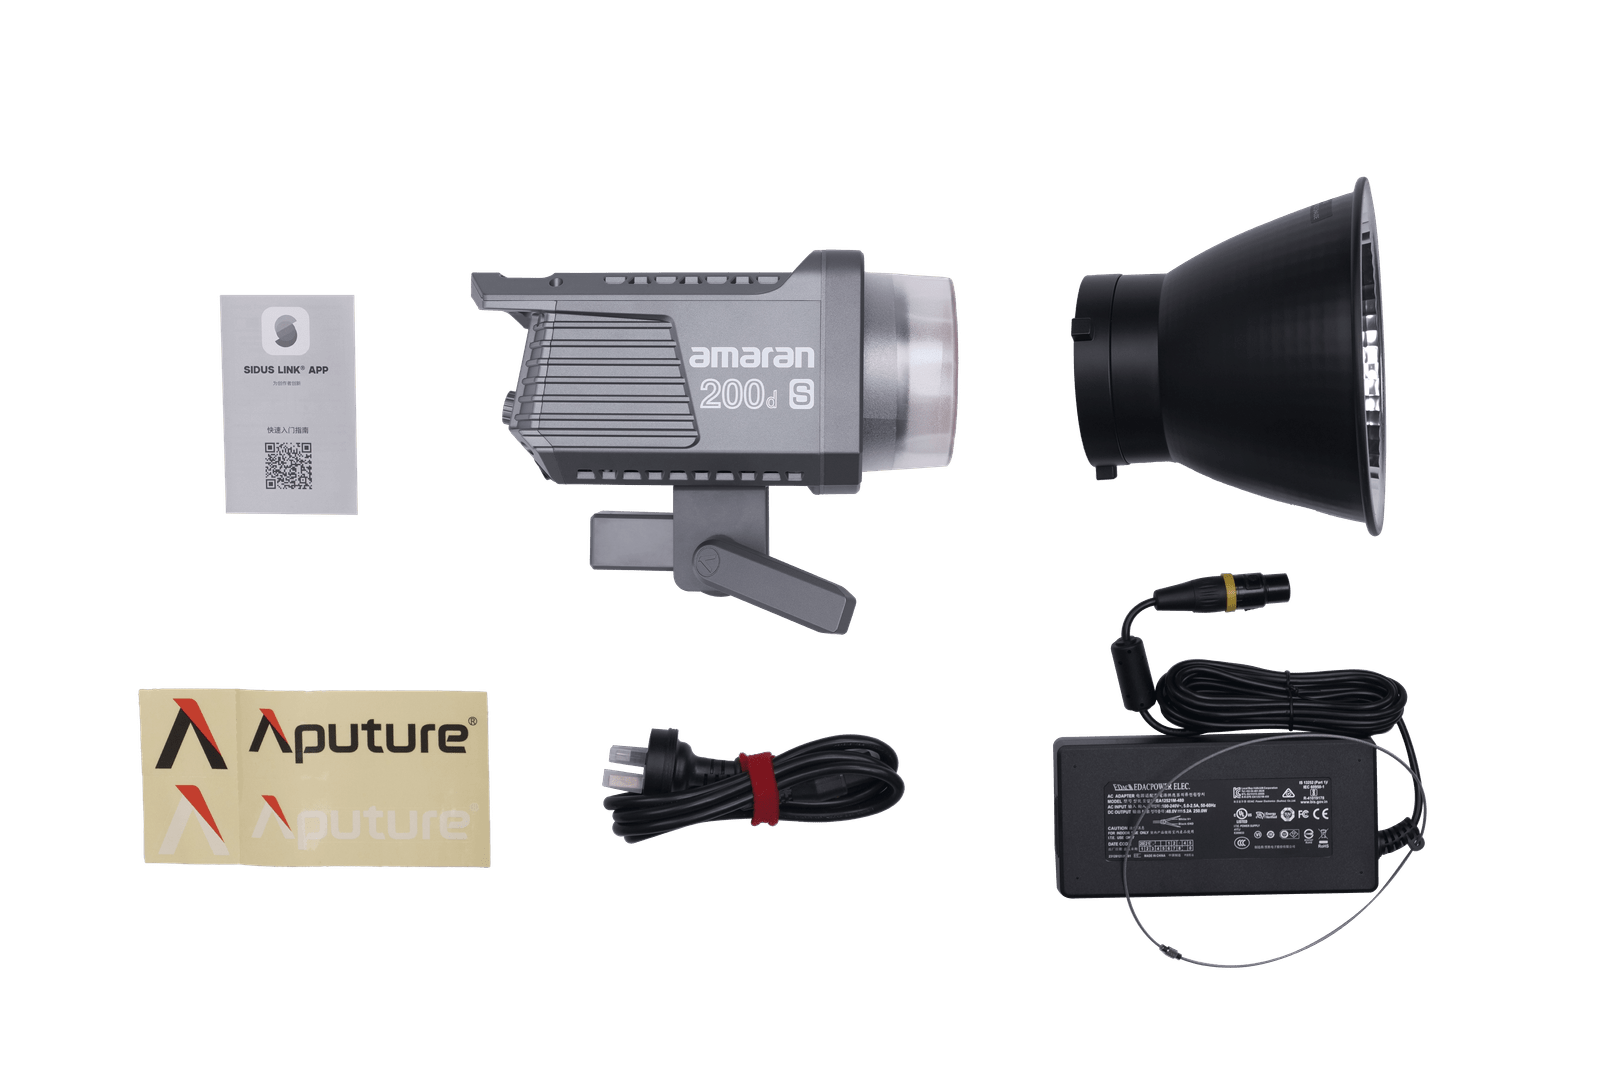 Aputure Amaran 200d S LED Video Light